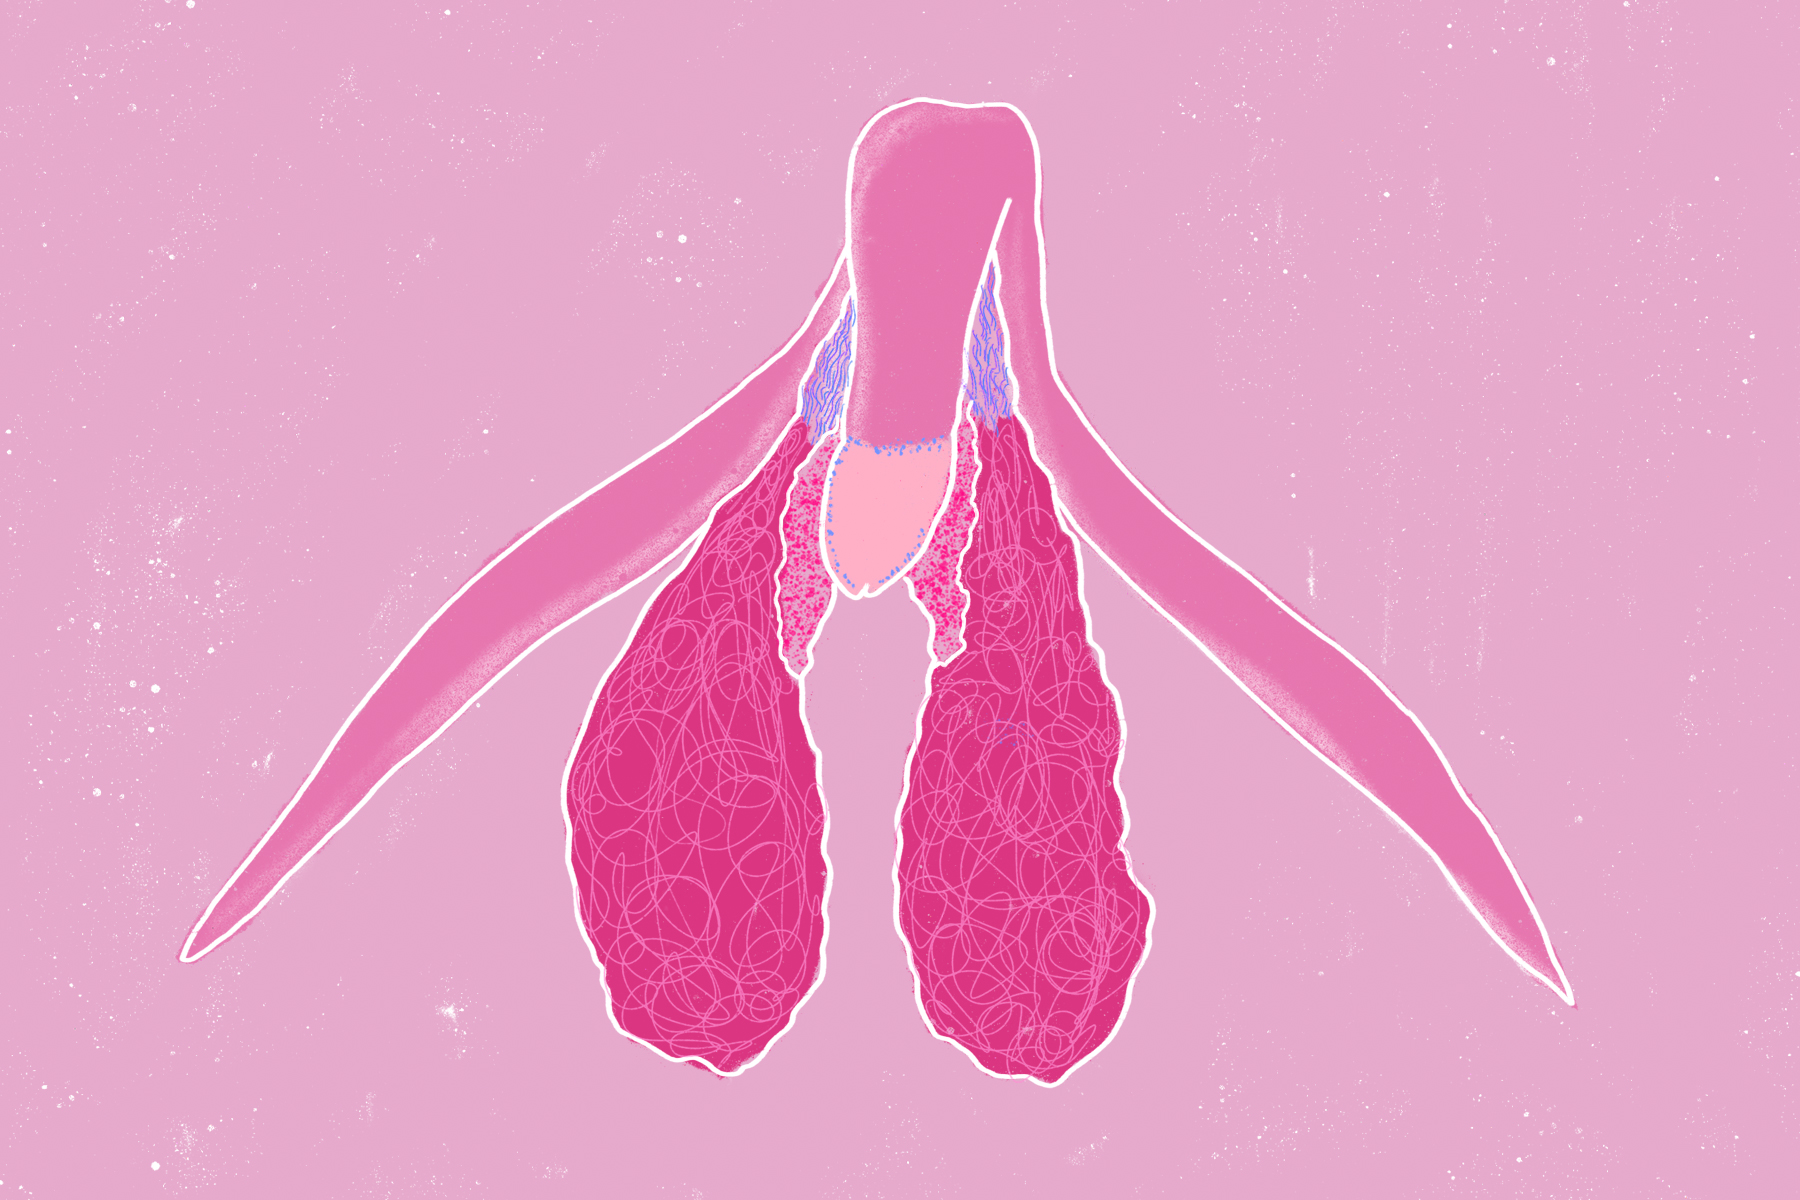 Conoces realmente las partes de la vulva? Clase de anatomía